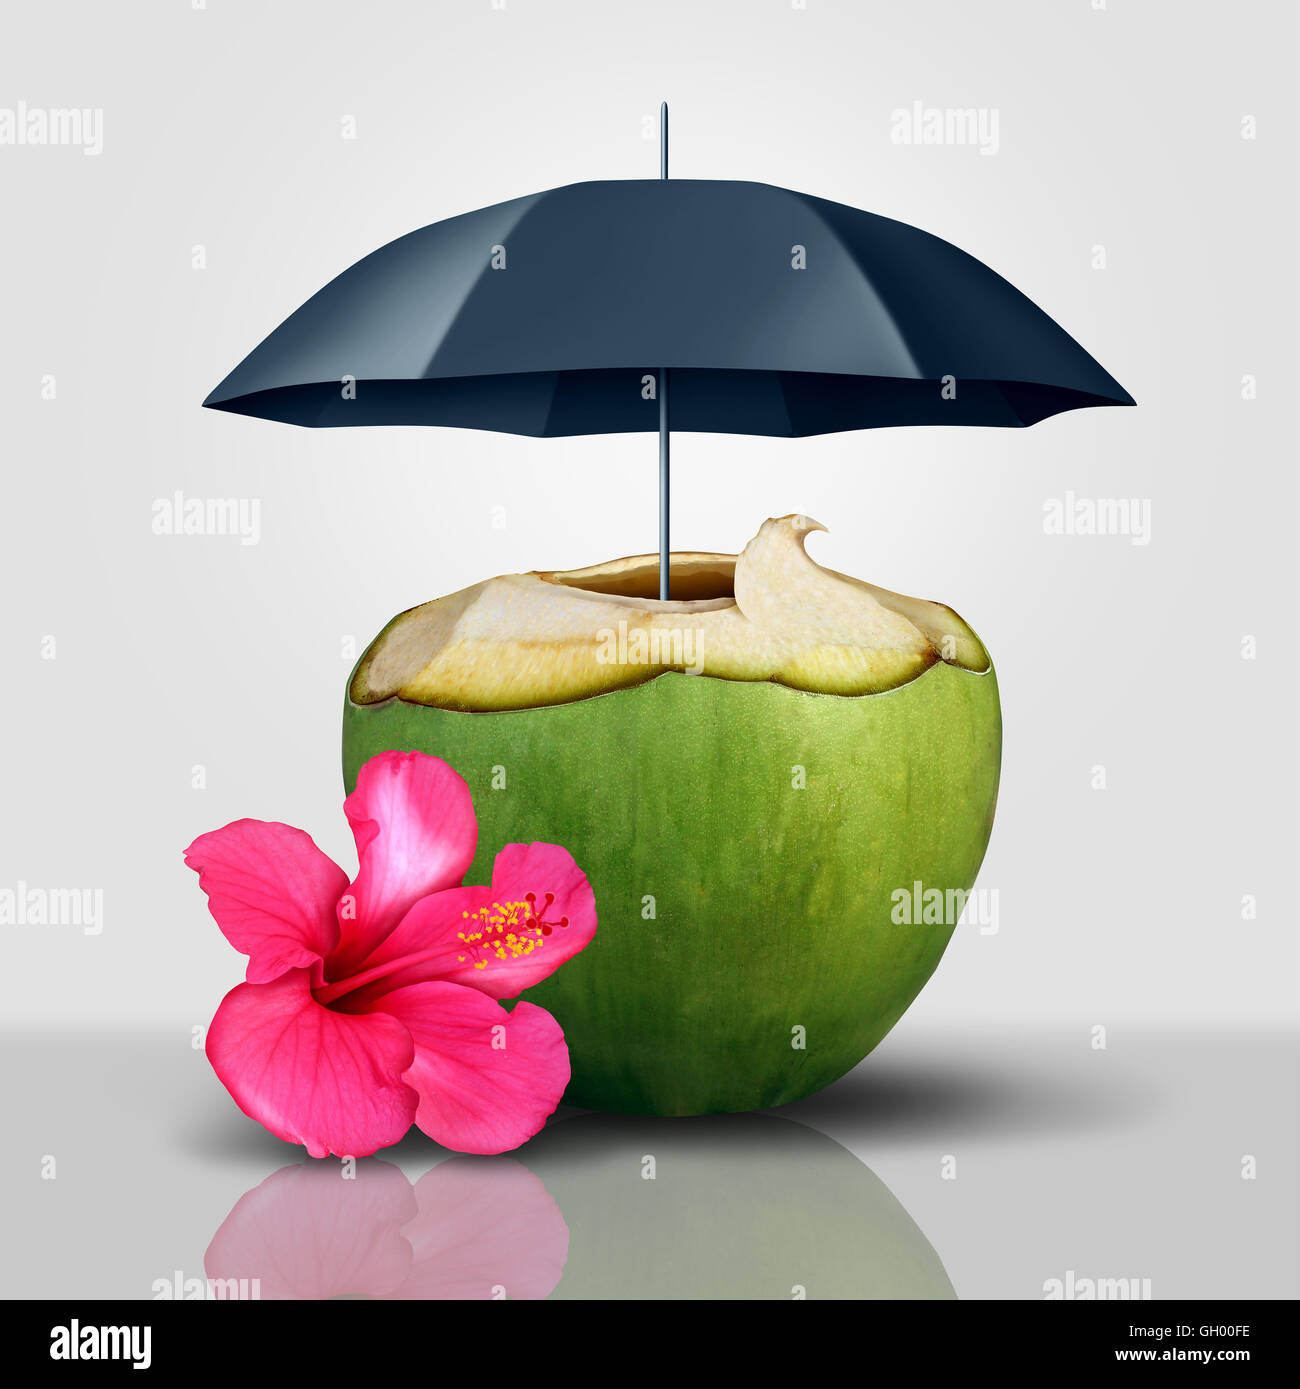 Urlaub-Sicherheit-Symbol als eine Kokosnuss tropischen Drink geschützt und abgedeckt mit einem Regenschirm als ein Reise- und Tourismusbranche Garantie Sicherheitskonzept mit 3D Abbildung Elemente. Stockfoto